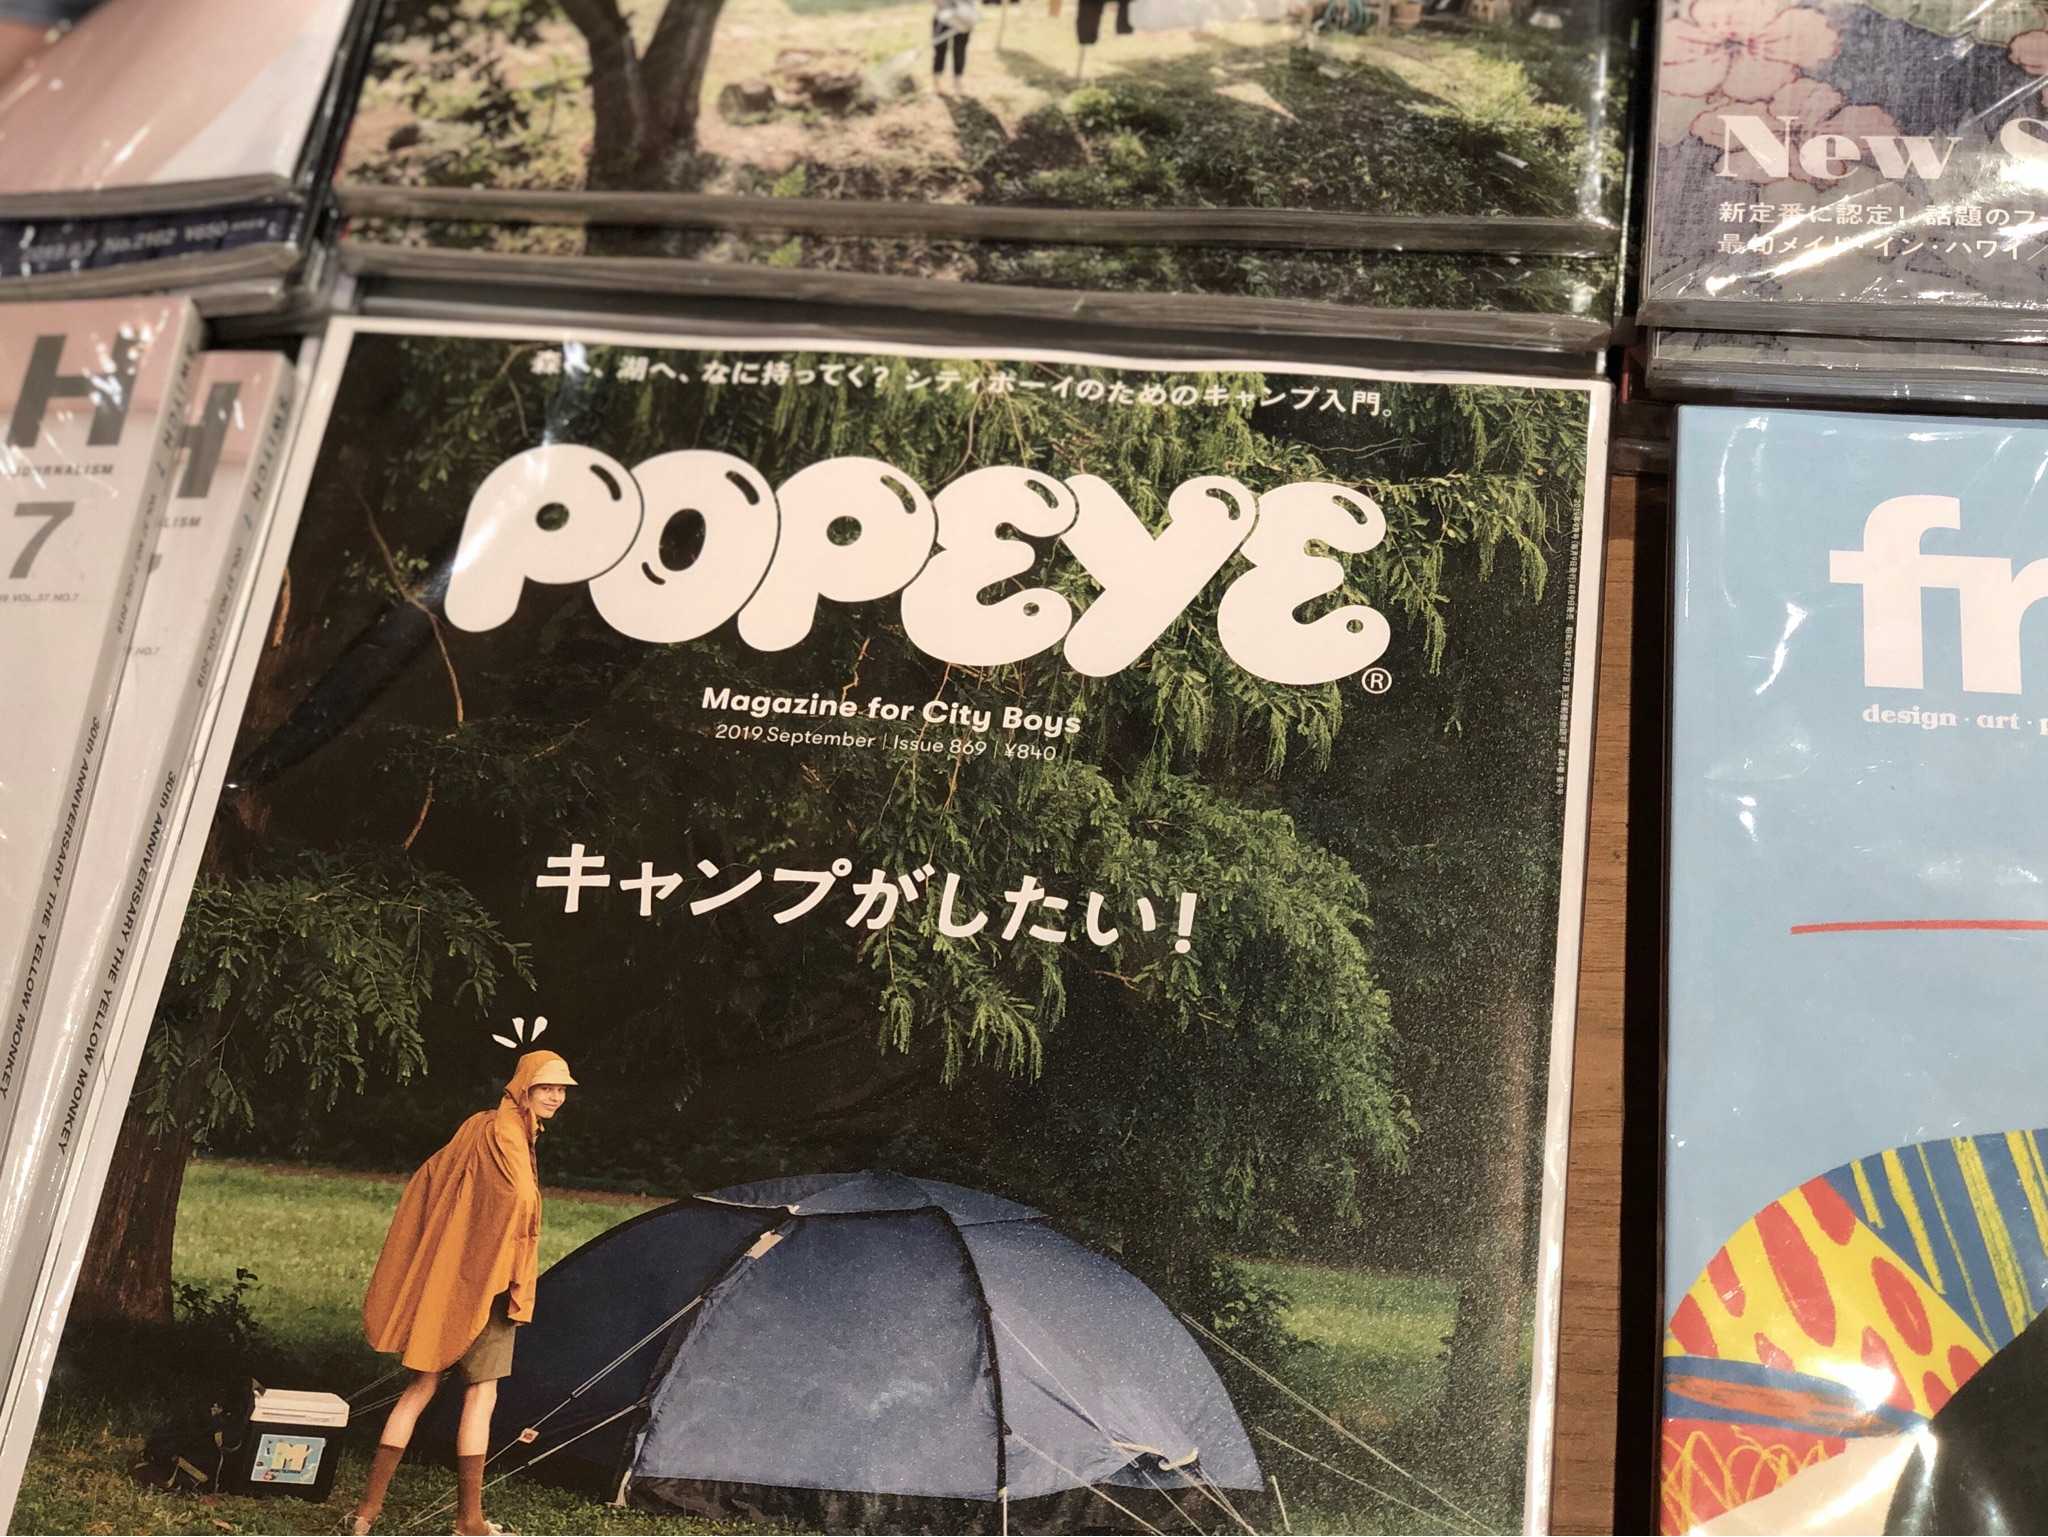 本尊镇楼本人是在日本留学的时候开始关注并尝试模仿popeye风格的